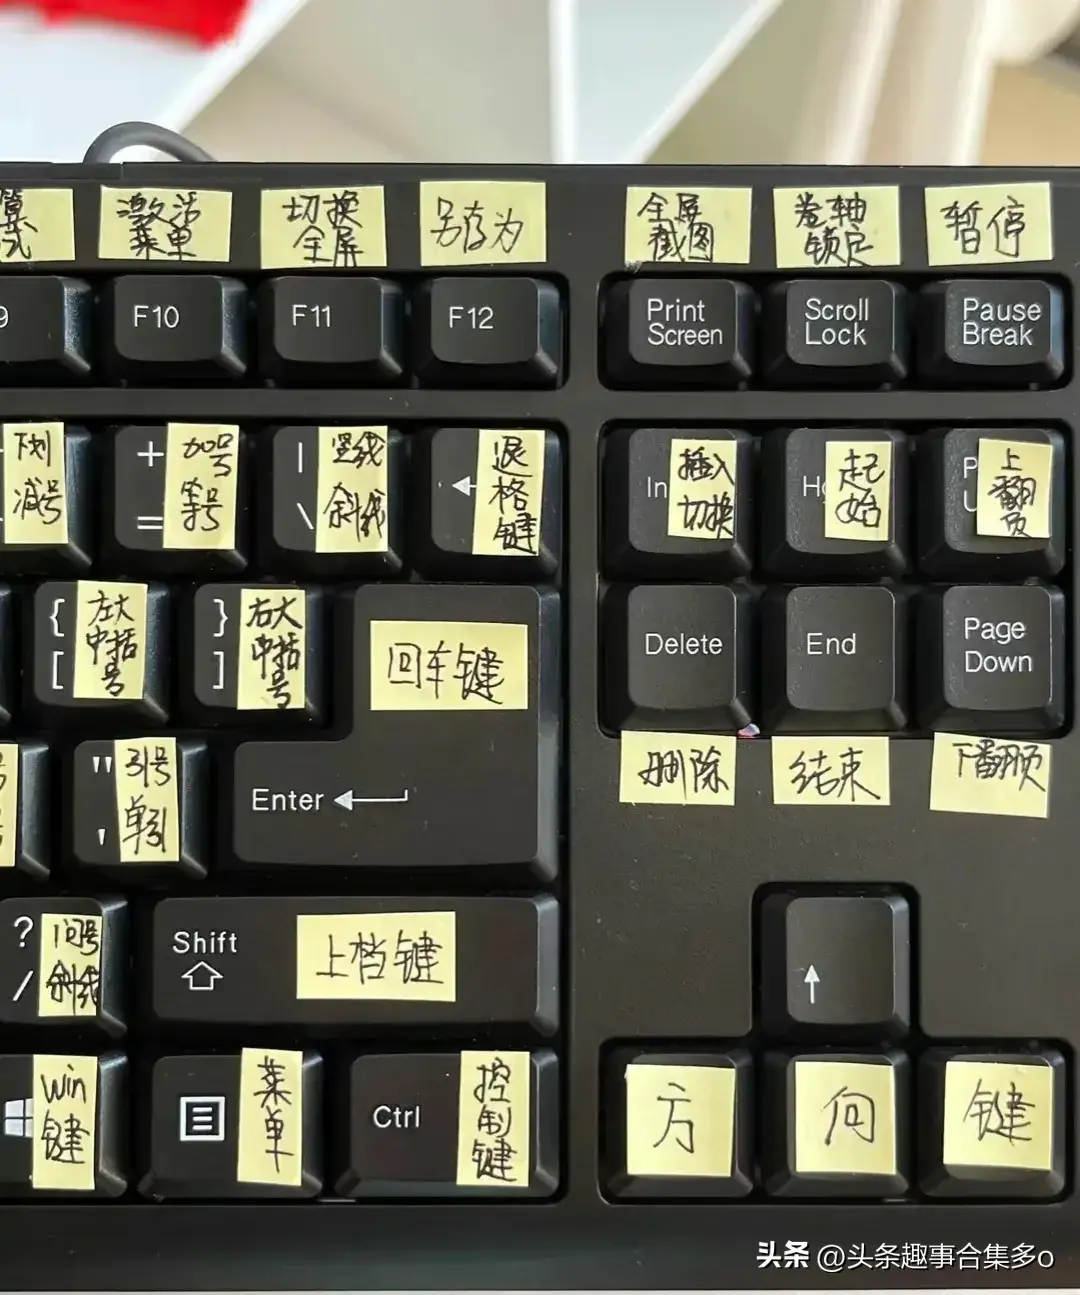 你可以不会电脑，但要知道键盘上的英文名称和常用的快捷键  第4张